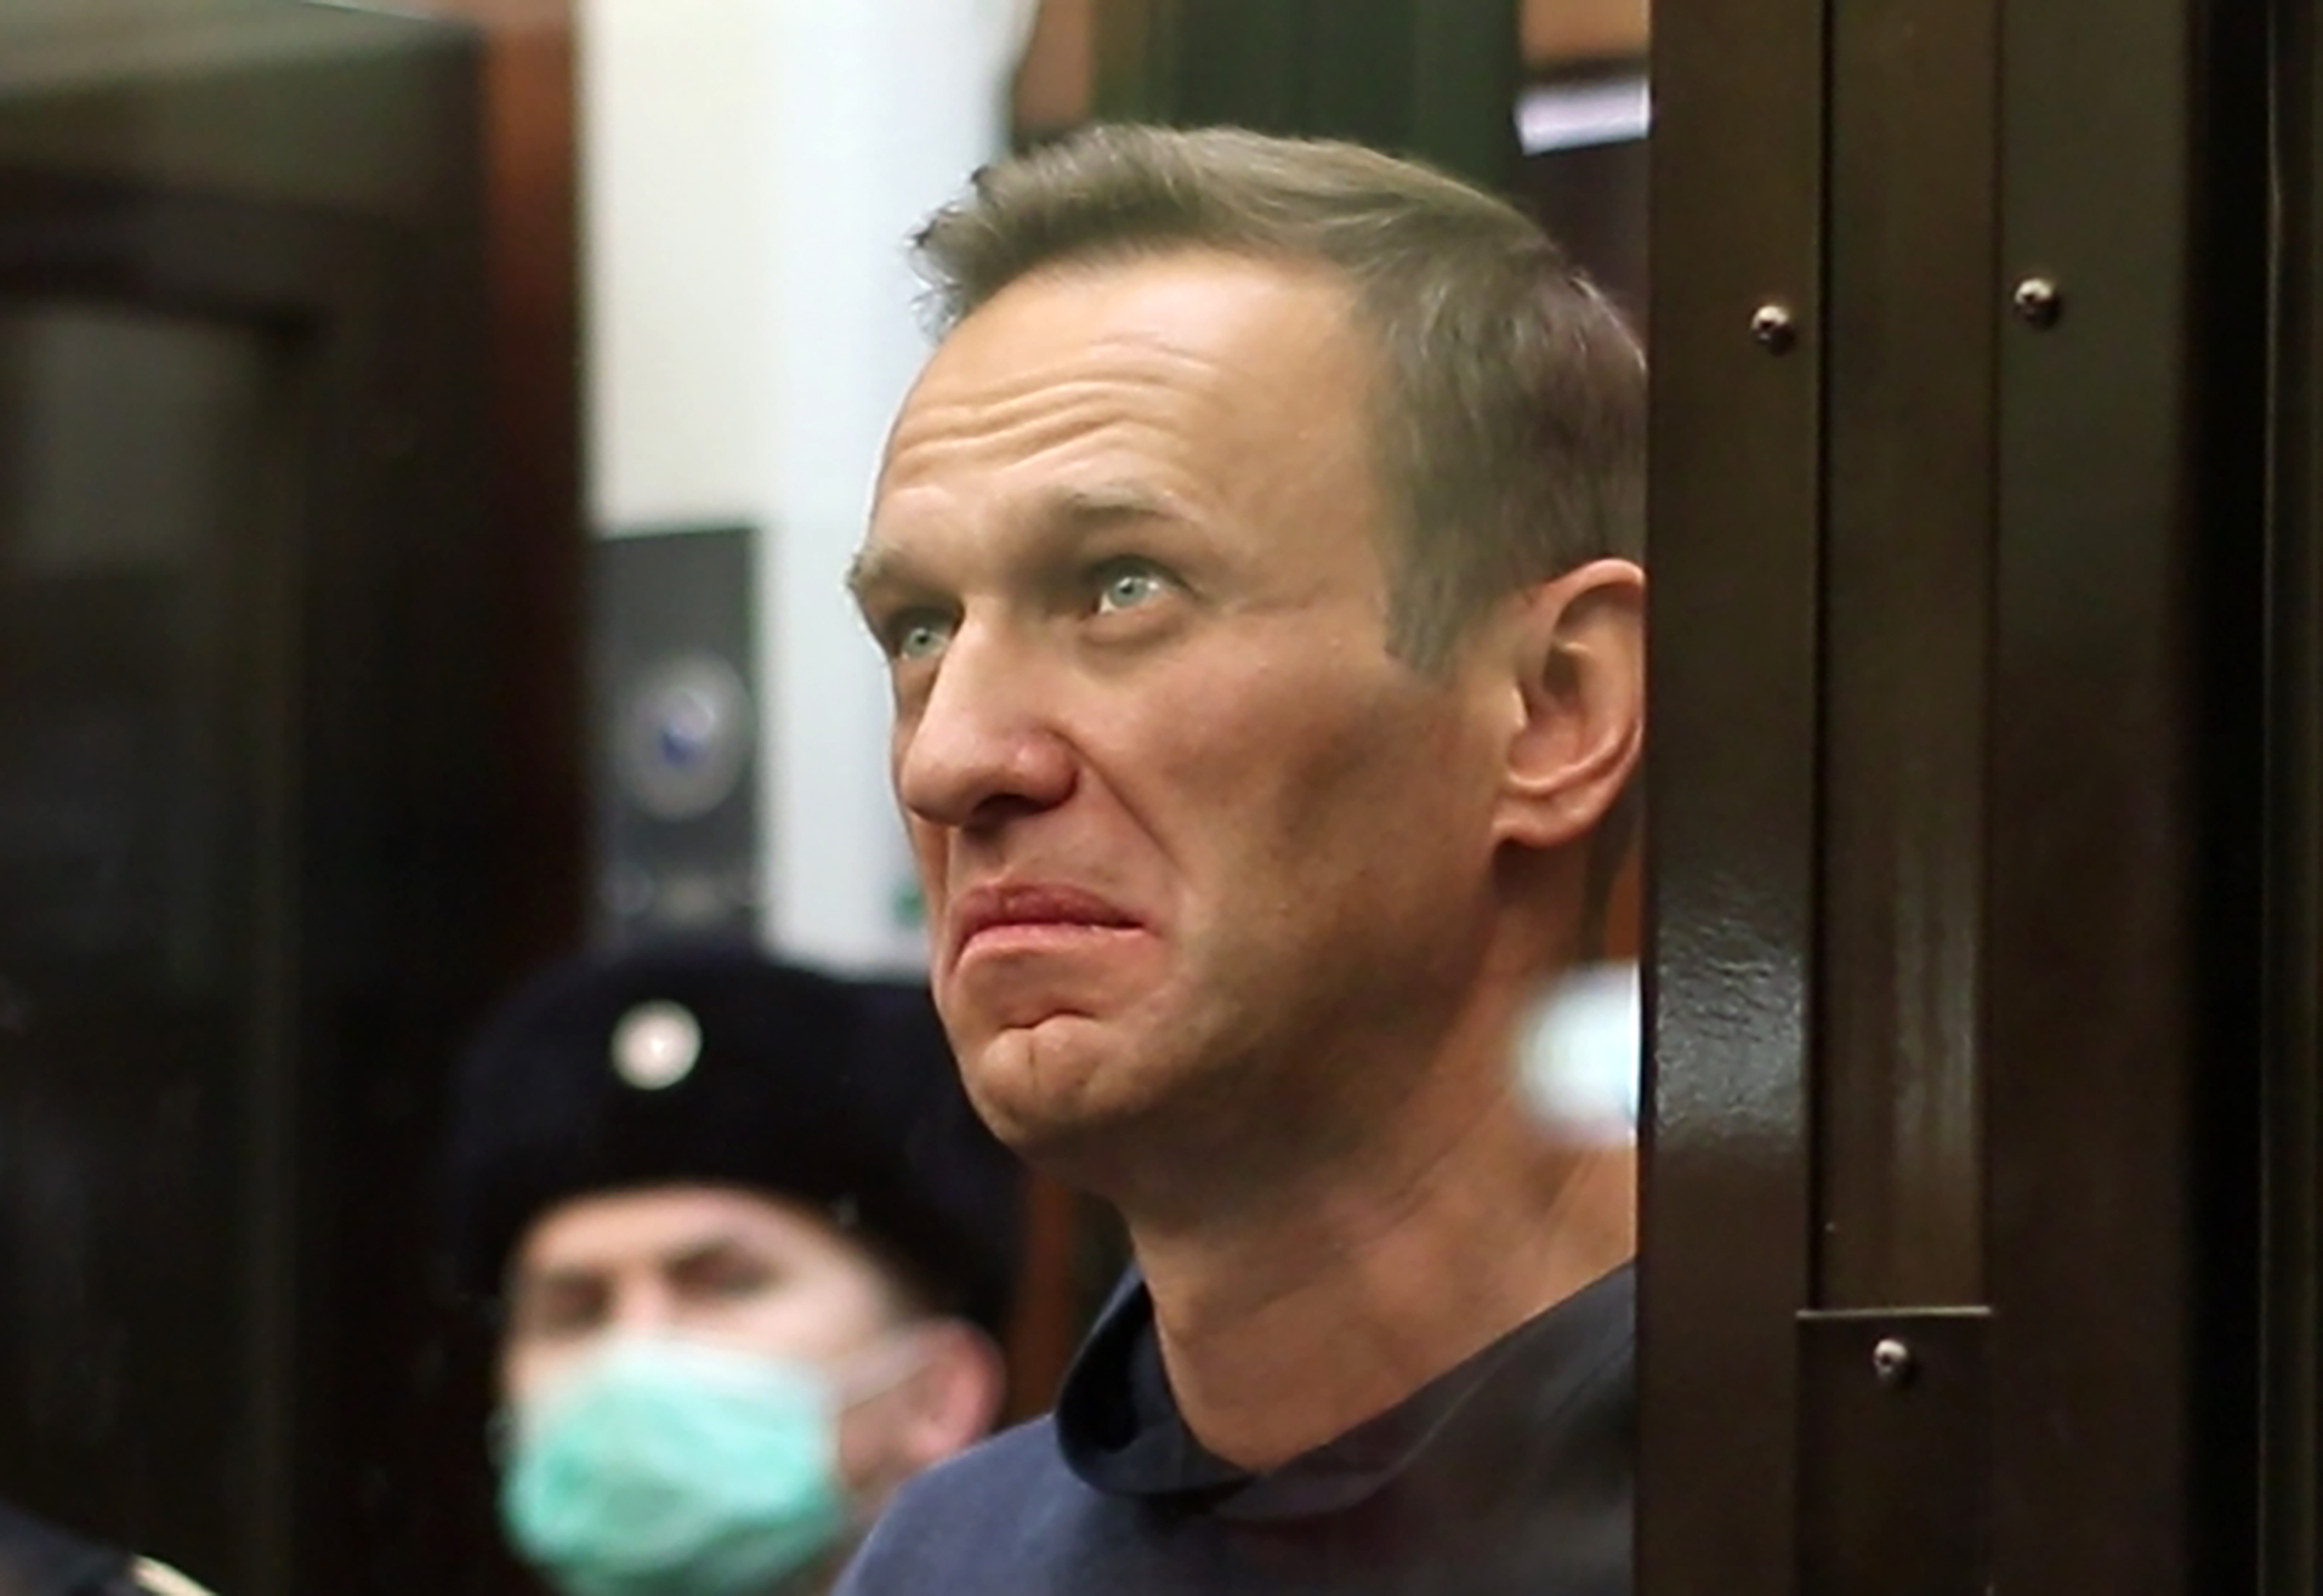 Общественники призвали привлечь Навального к административной и уголовной ответственности по делу о клевете на ветерана